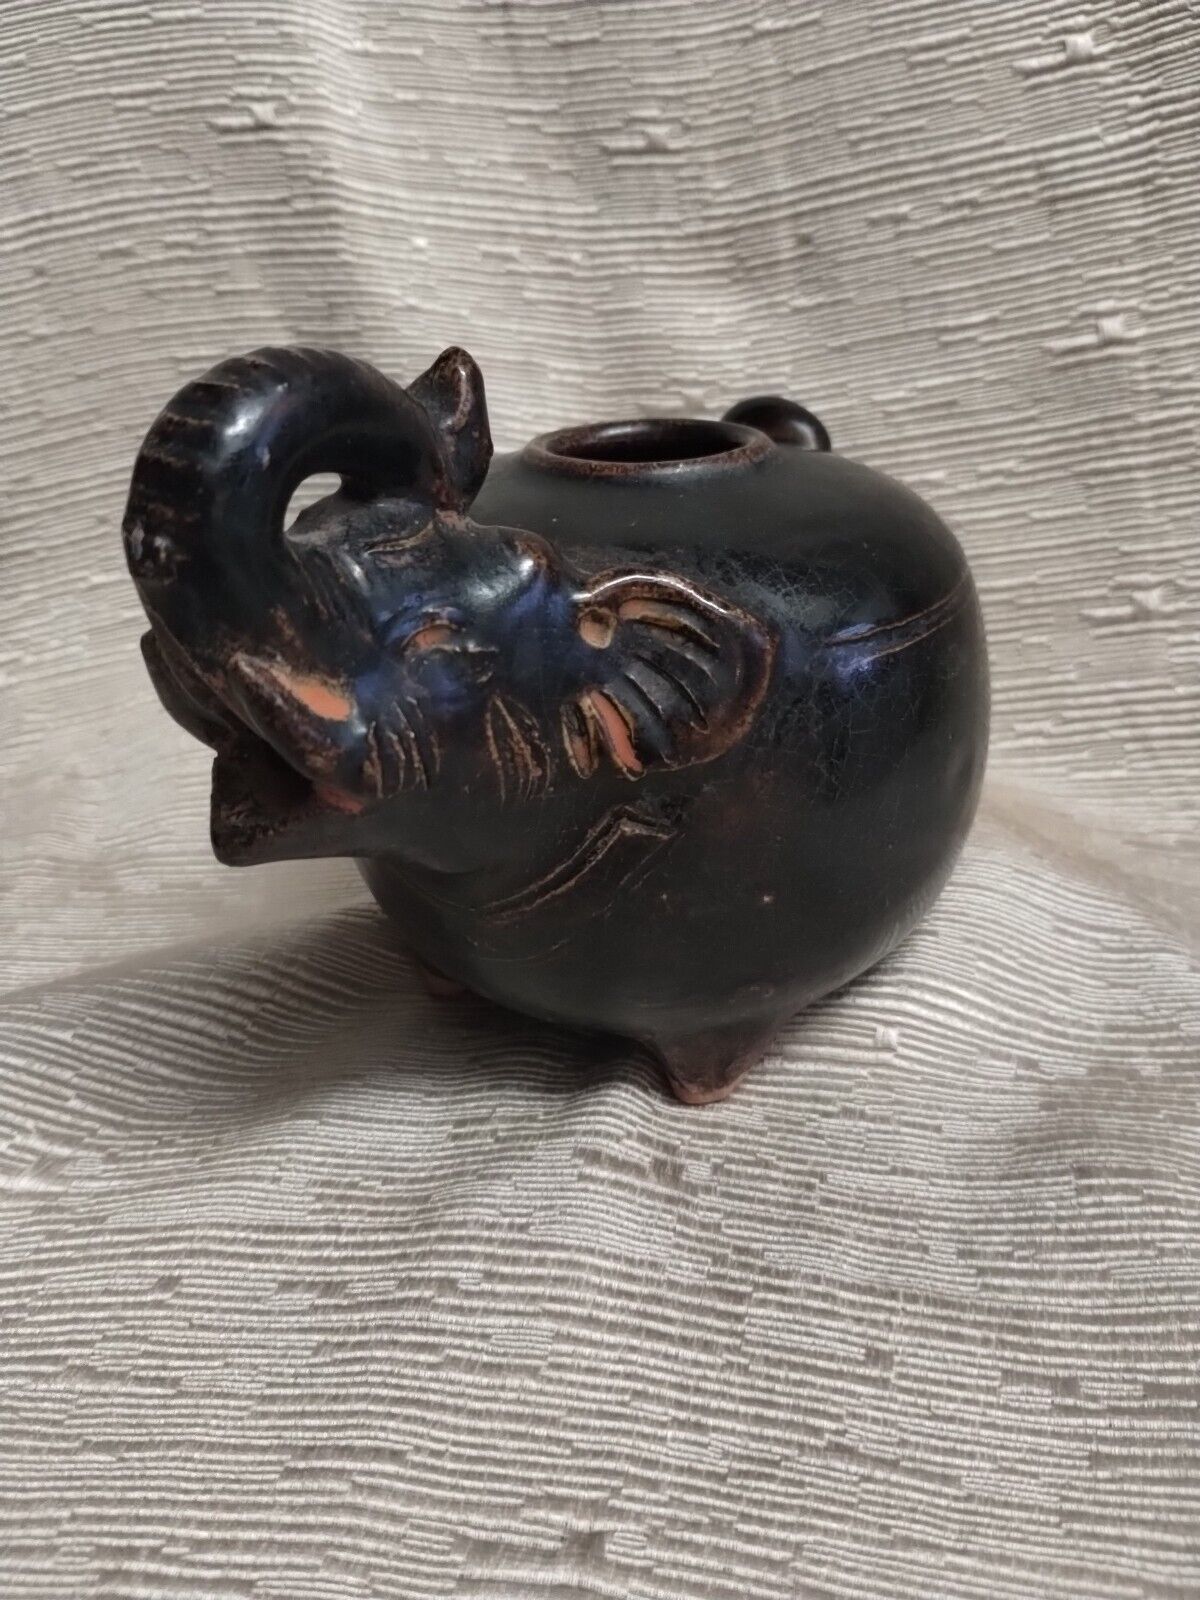  Antique Footed Ceramic  Elephant Asian Tea Pot, No Lid  